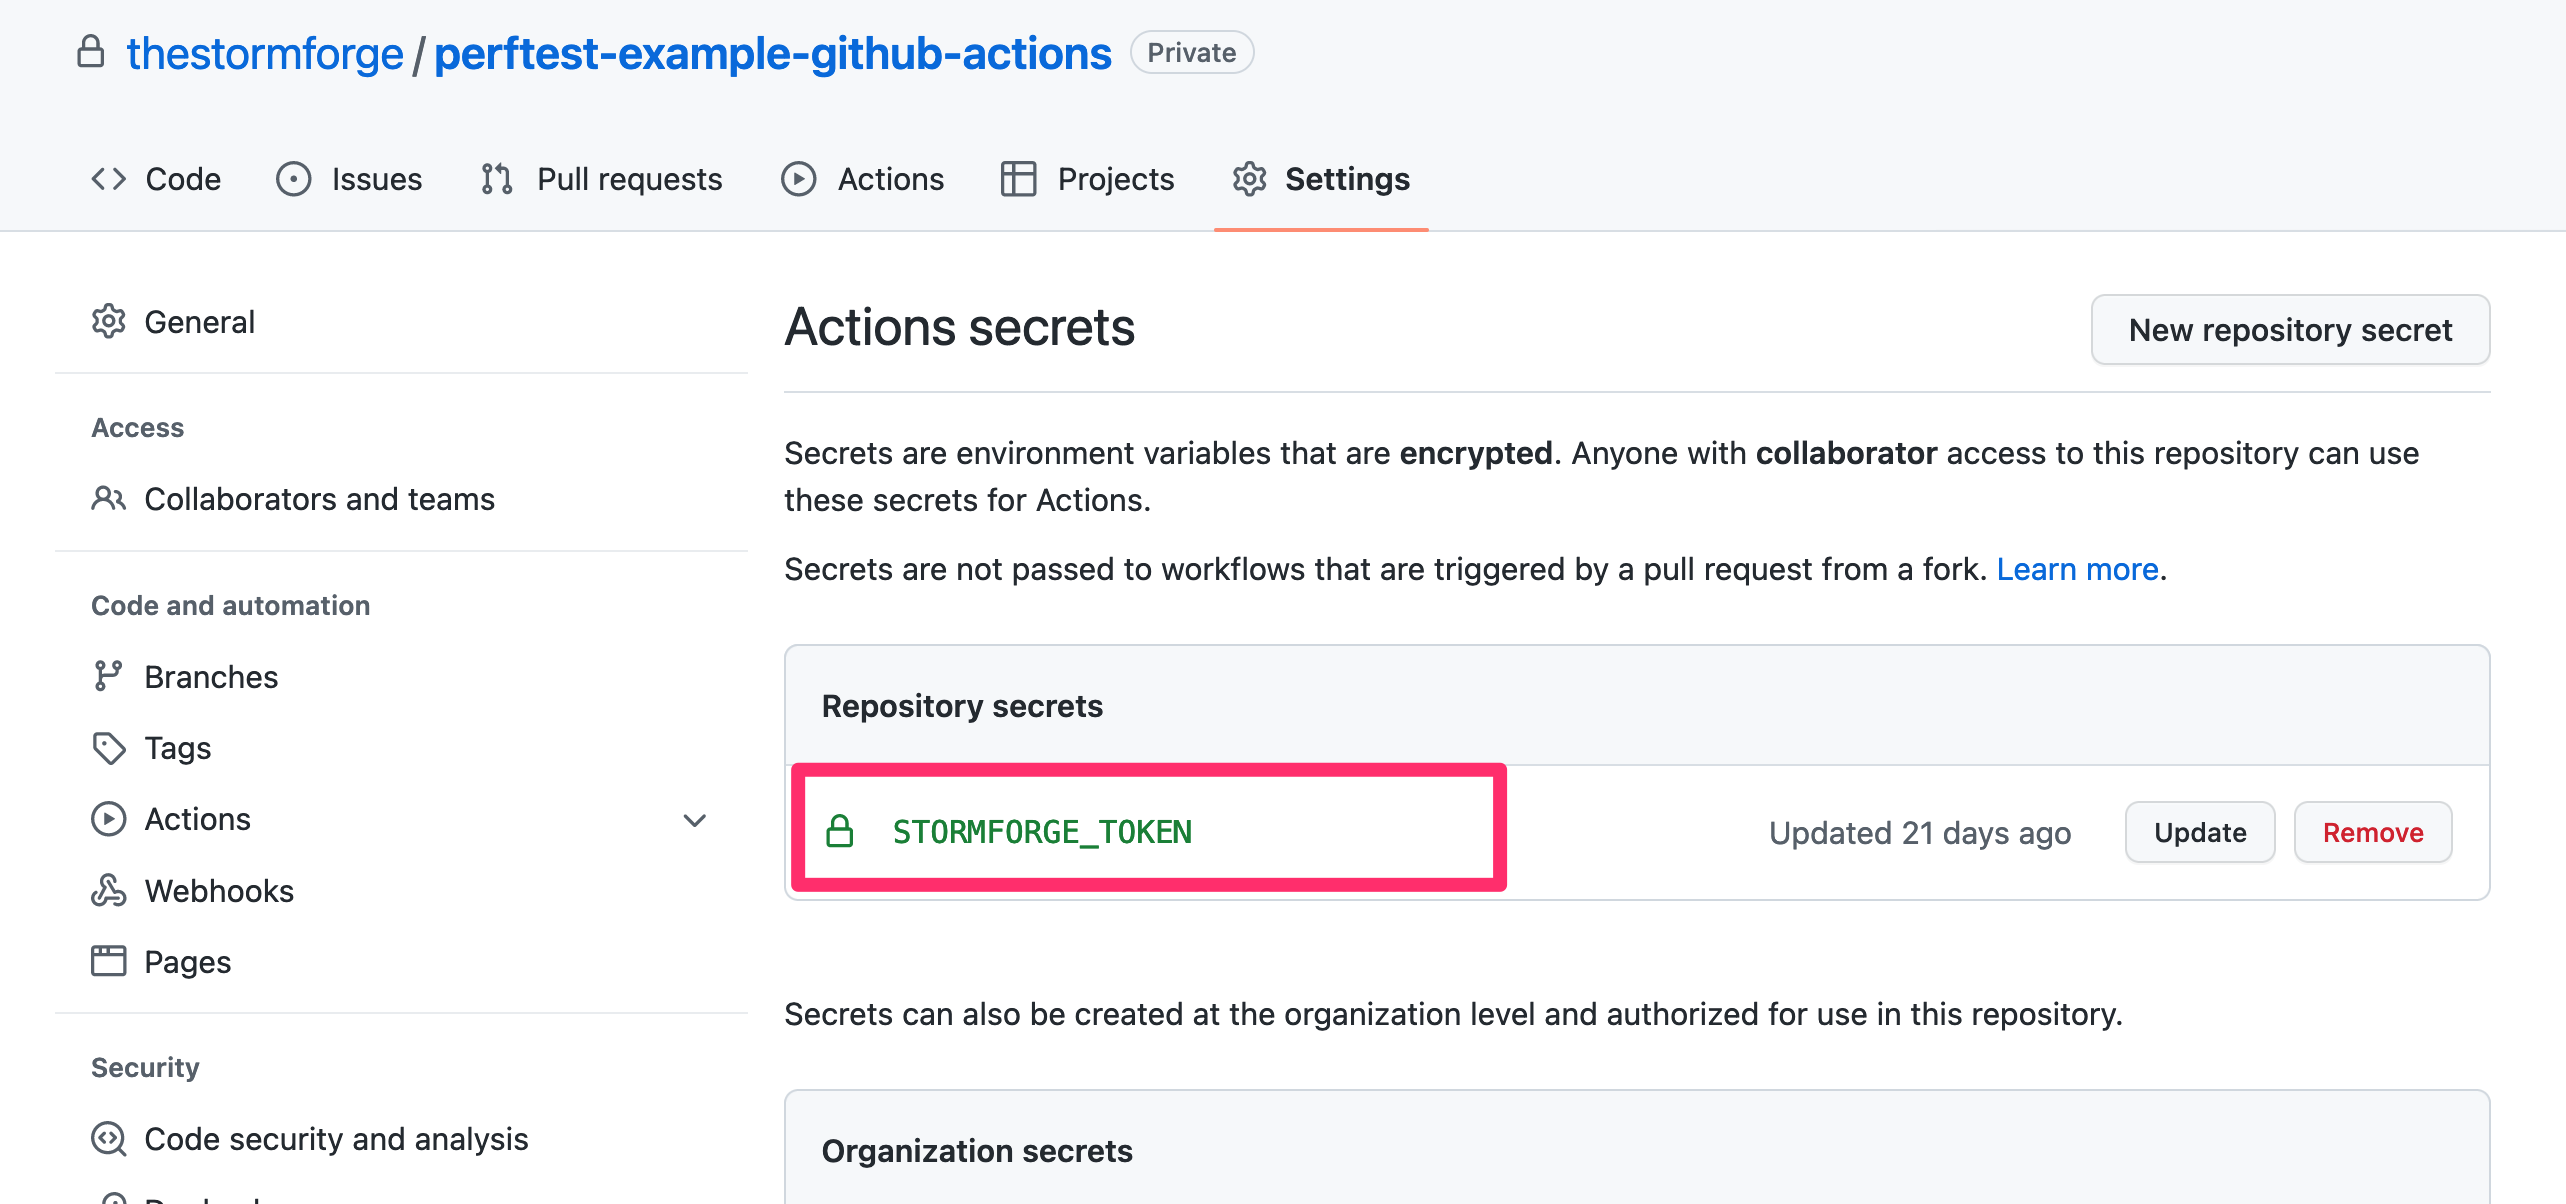 GitHub Actions Secrets